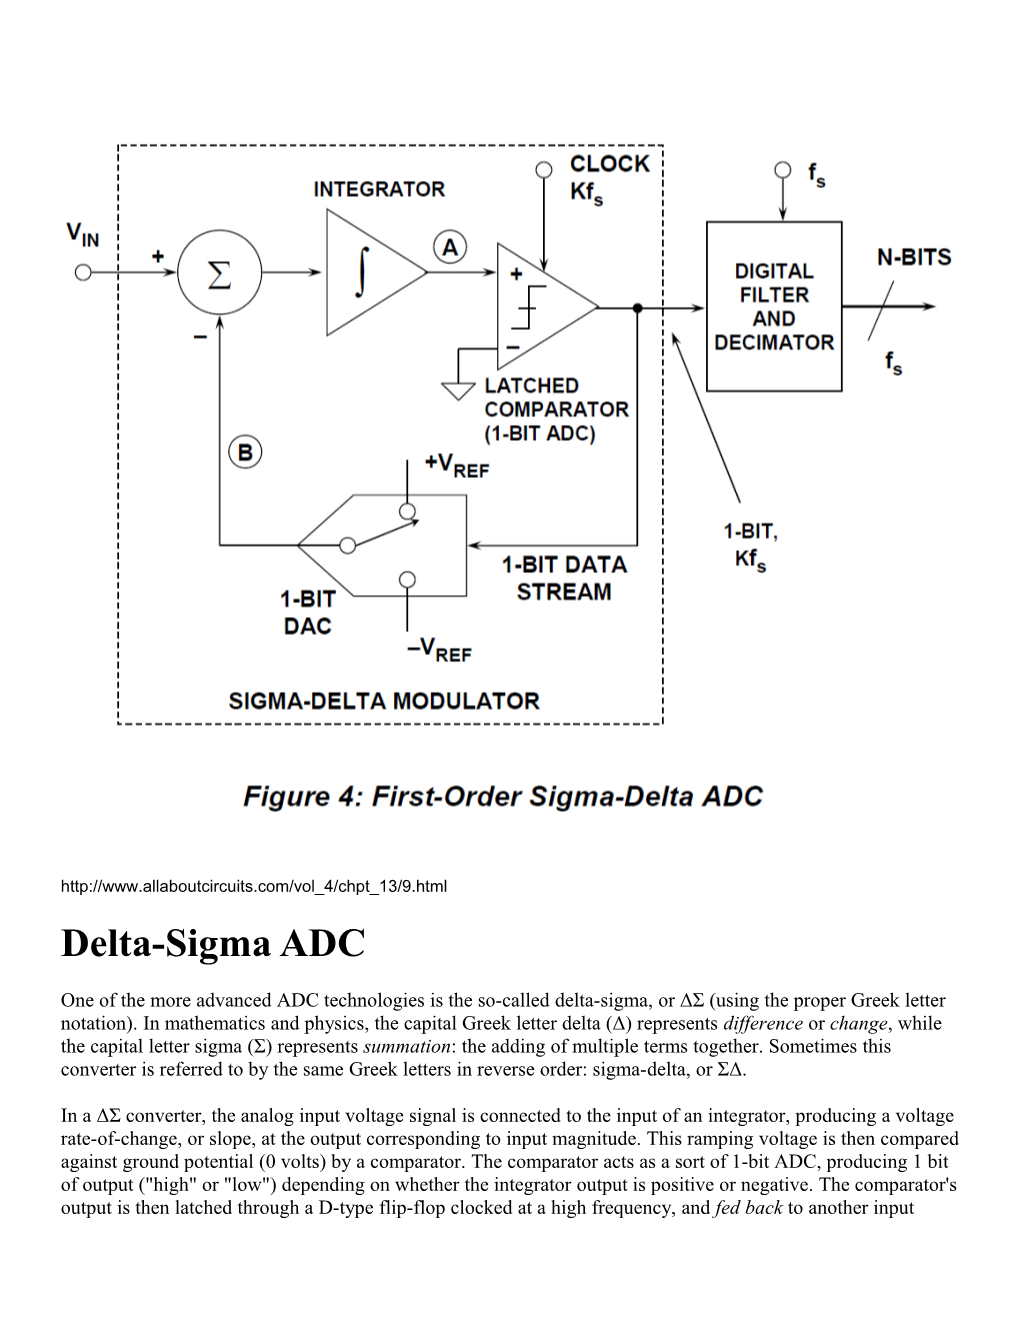 Delta-Sigma ADC